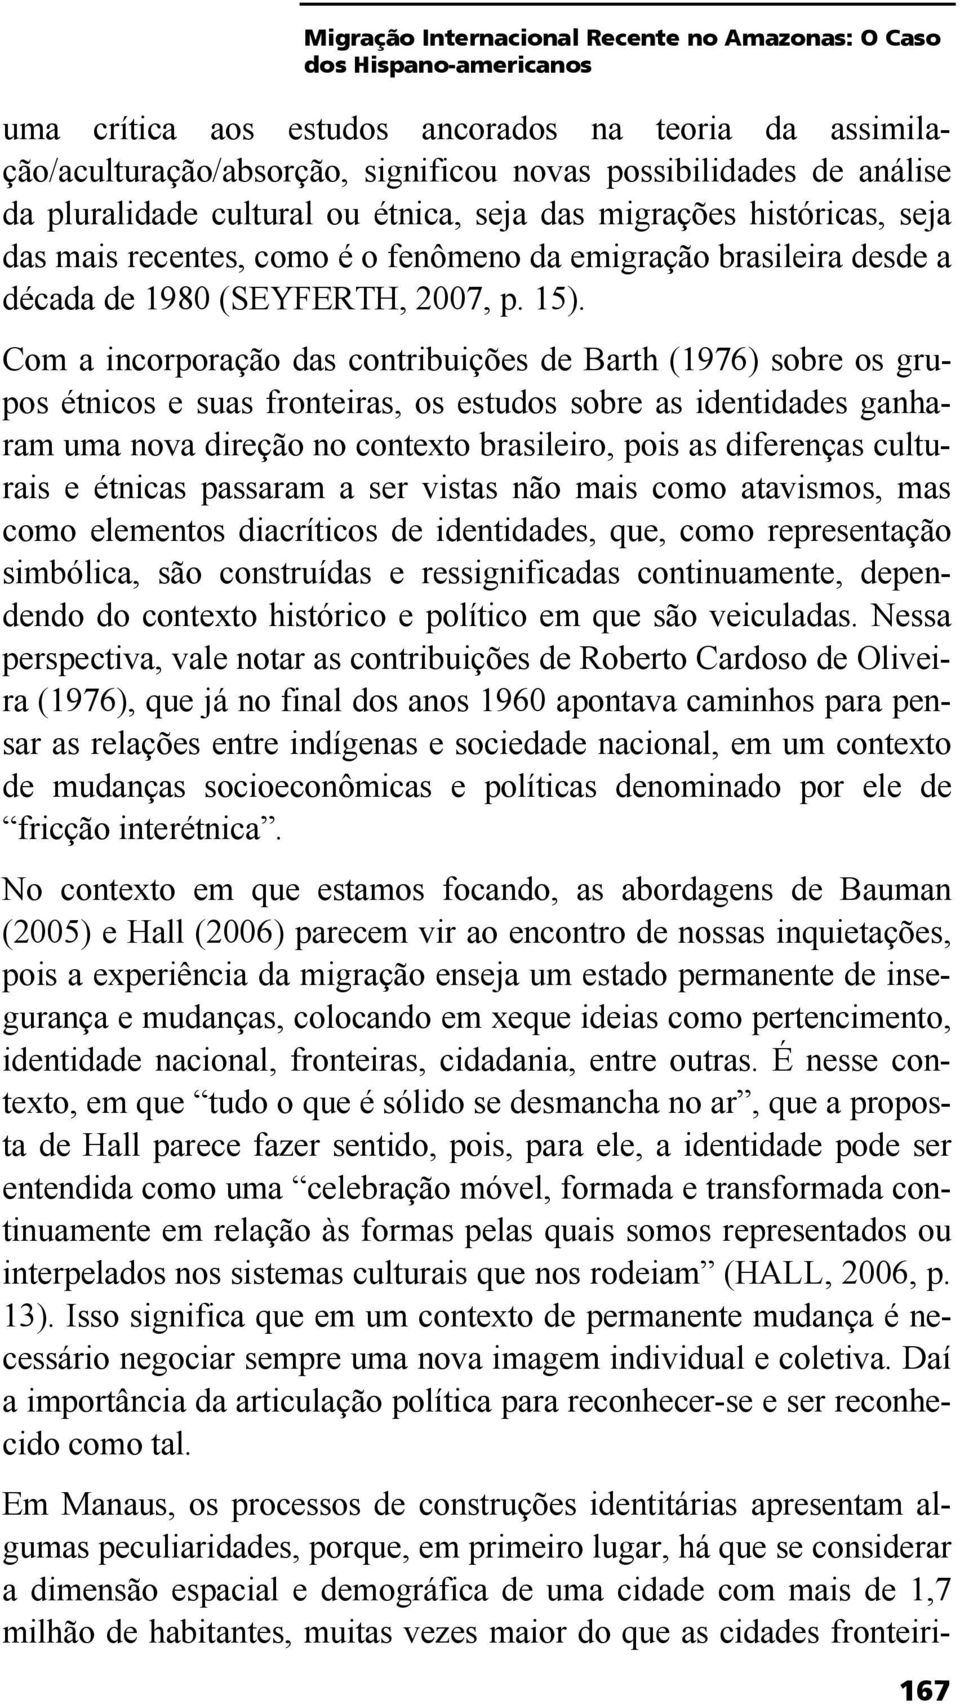 Com a incorporação das contribuições de Barth (1976) sobre os grupos étnicos e suas fronteiras, os estudos sobre as identidades ganharam uma nova direção no contexto brasileiro, pois as diferenças